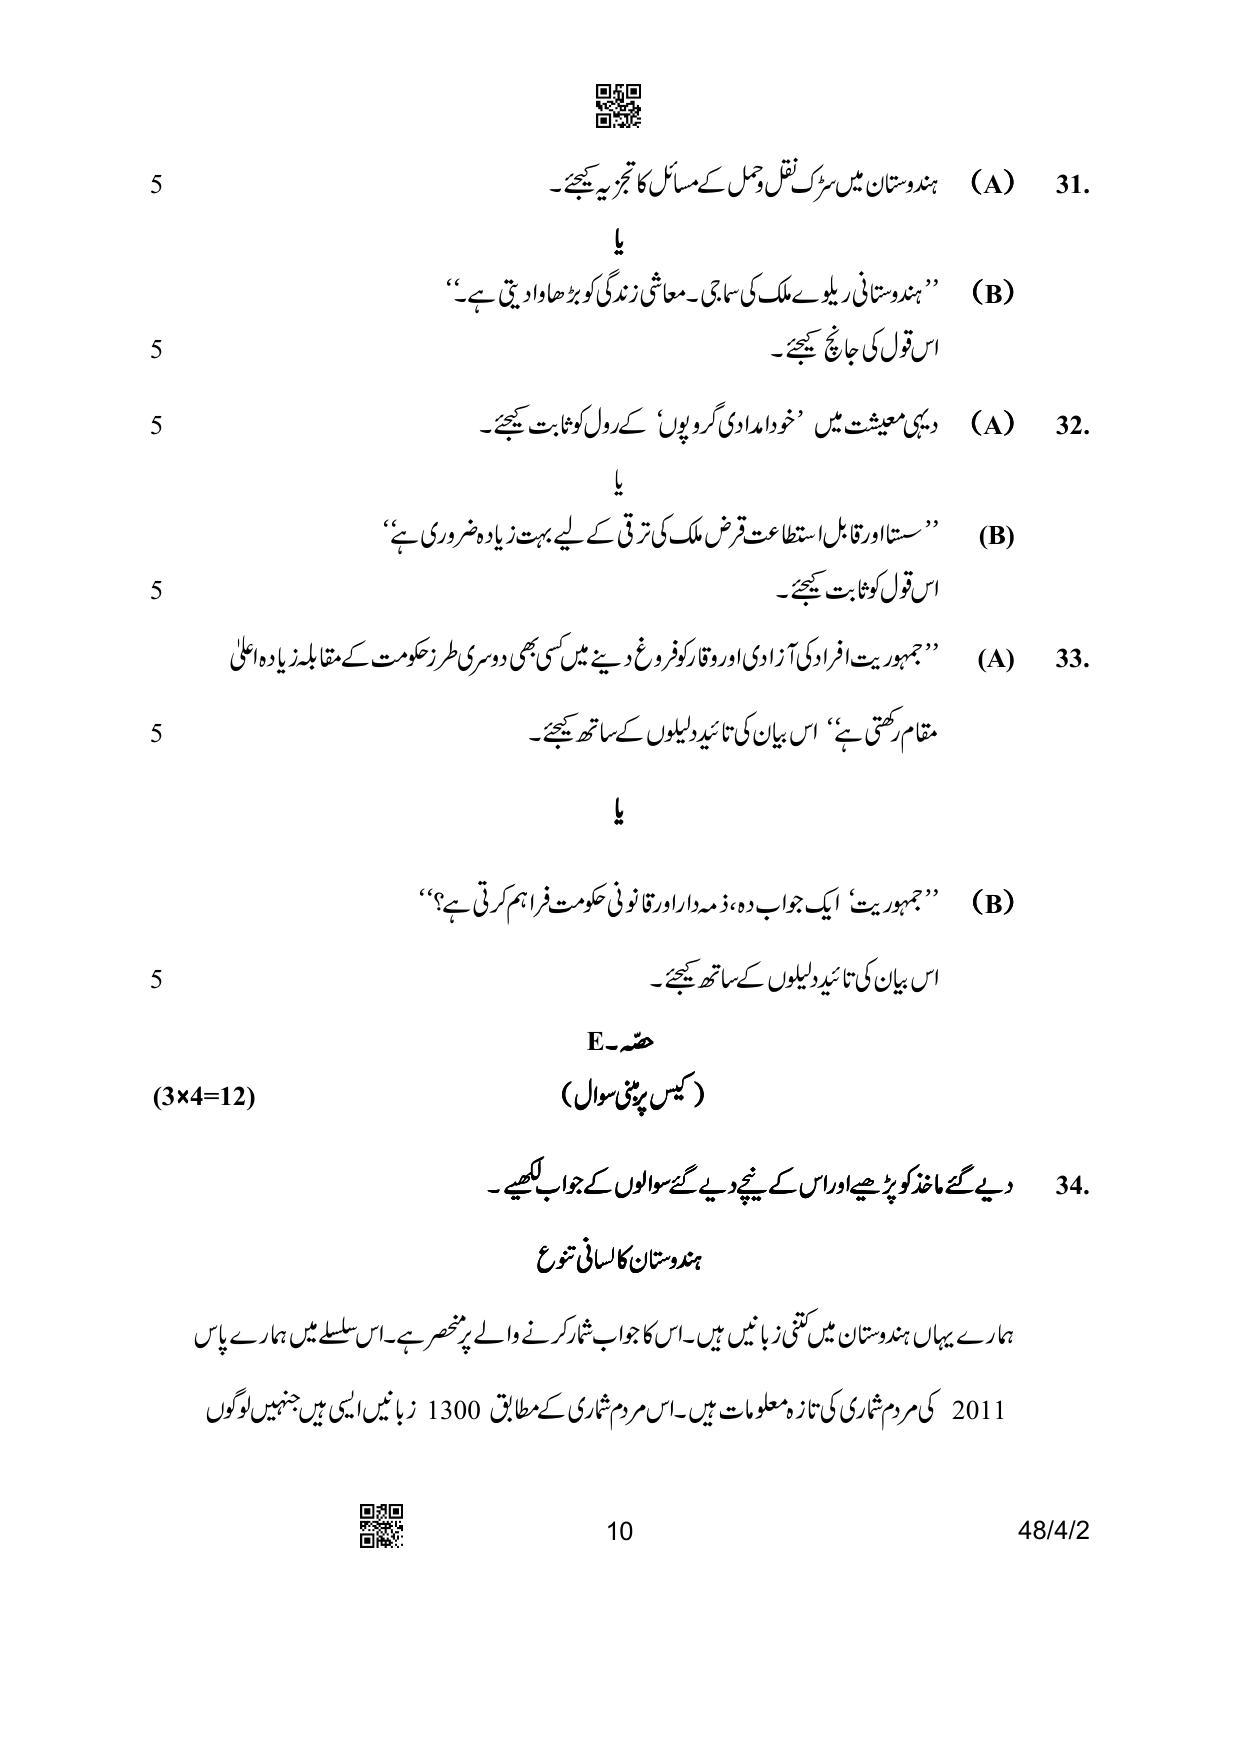 CBSE Class 10 48-4-2 Social Science Urdu Version 2023 Question Paper - Page 10